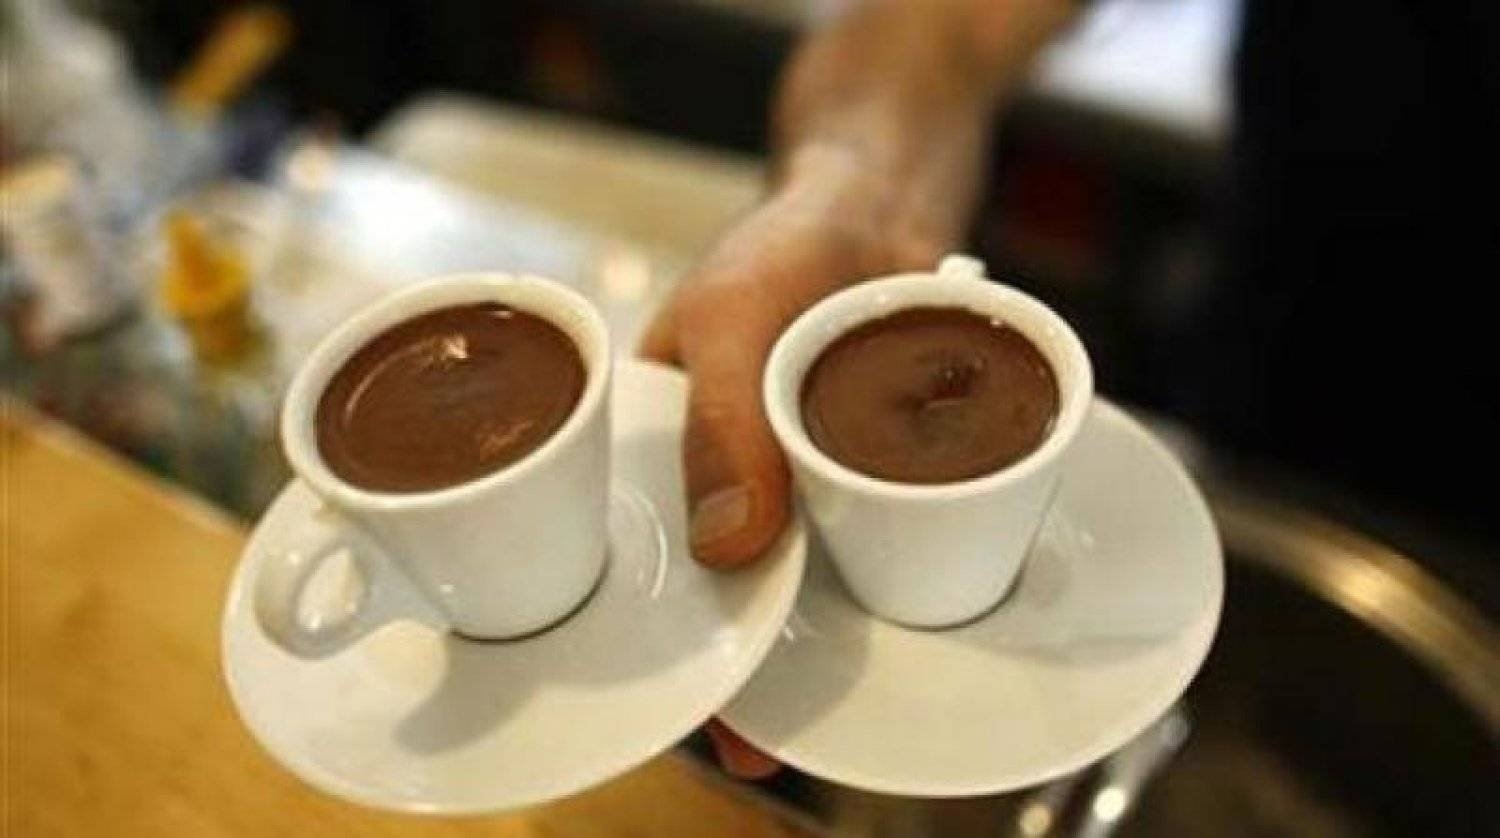 لماذا يعتبر خبراء القهوة مشروباً «معجزة»؟